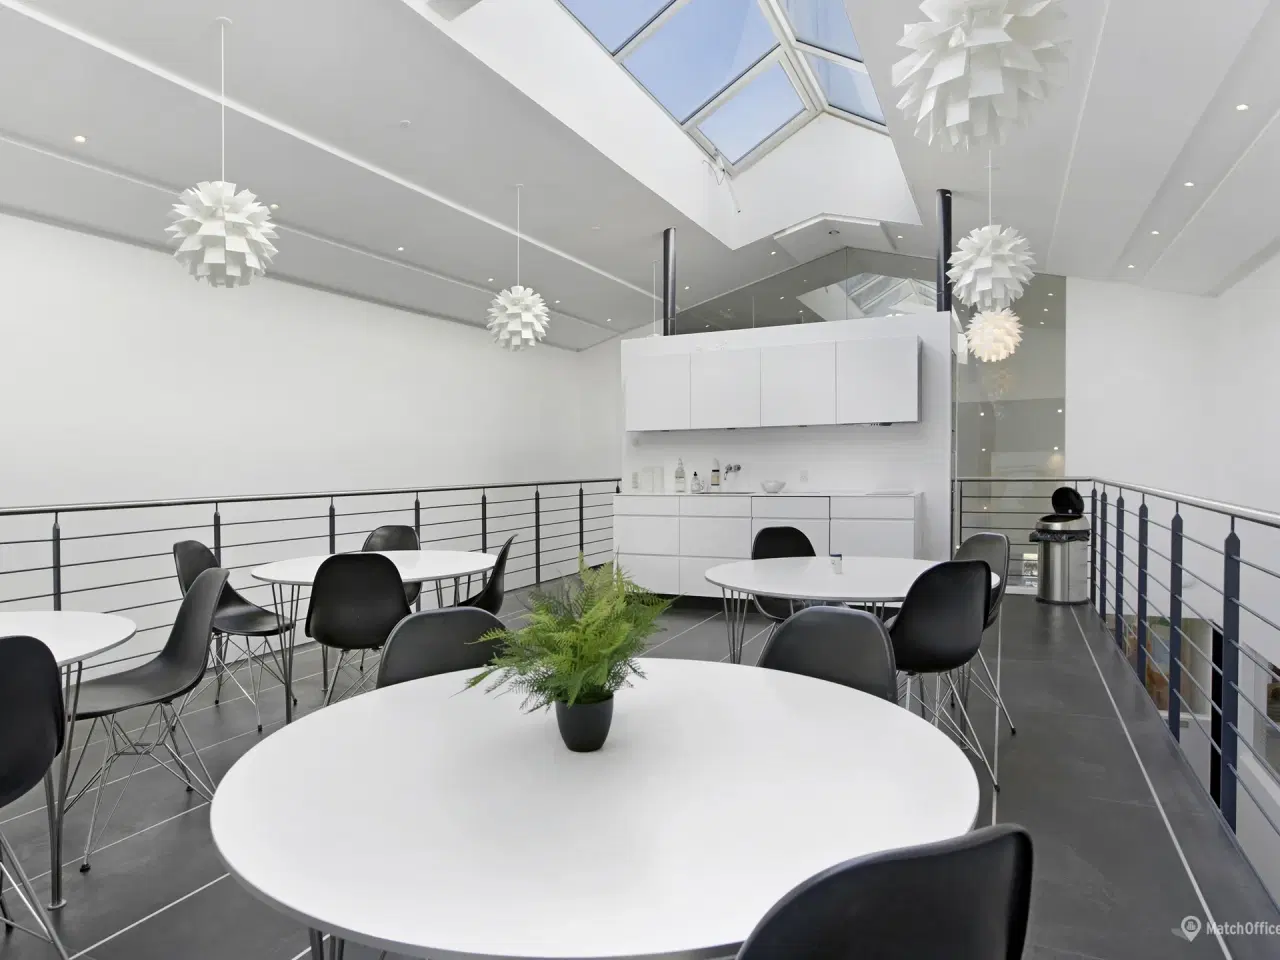 Billede 15 - Yderst indbydende kontor med højt til loftet samt fantastisk lysindfald som også indeholder mødelokale eller et lille kontor - Ring for mere info👍🏼